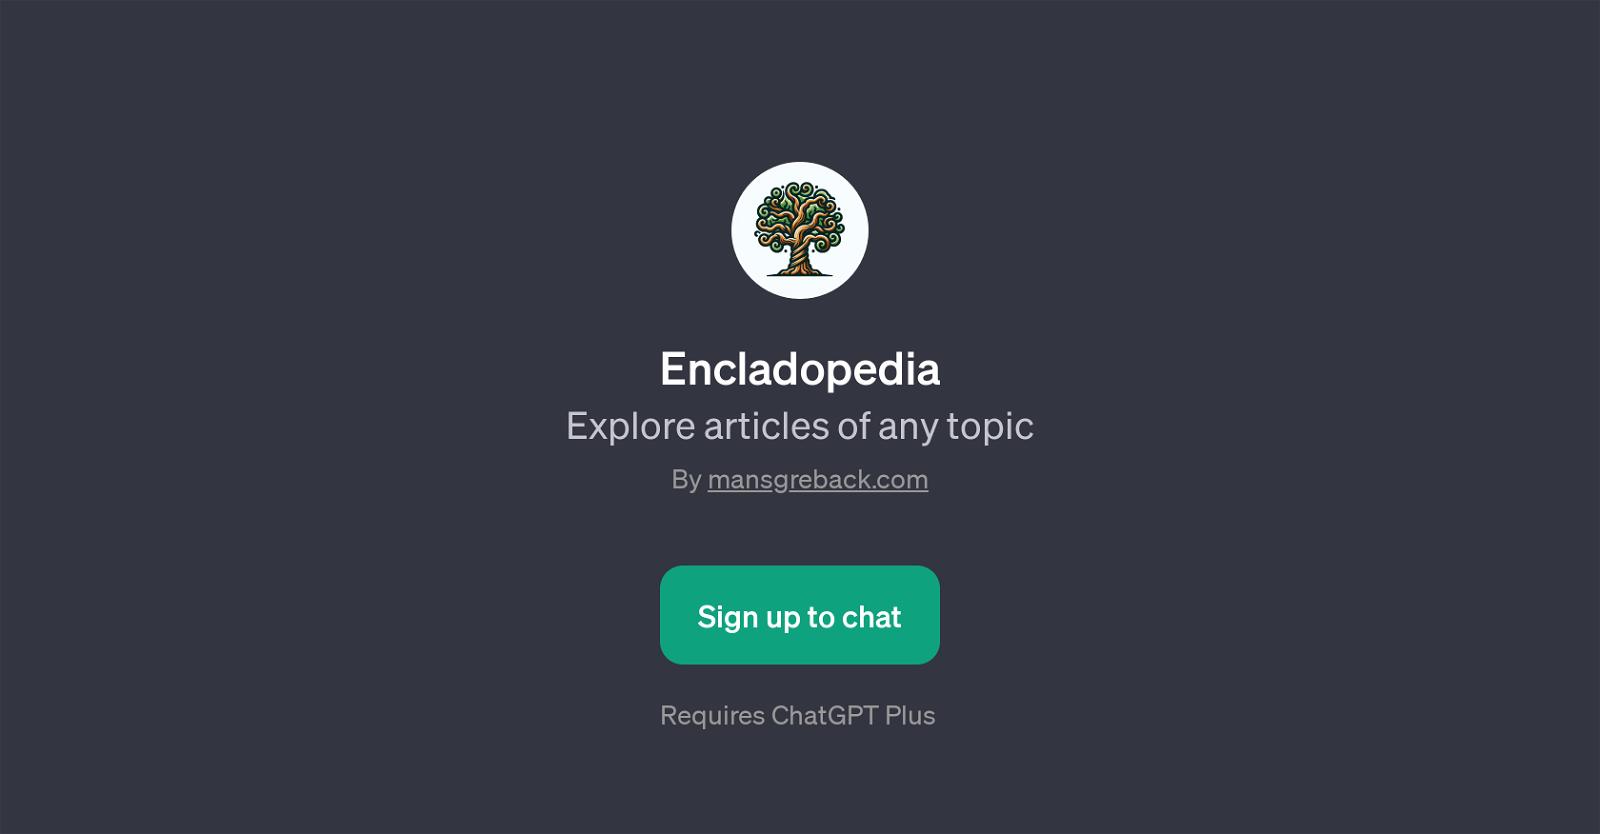 Encladopedia website